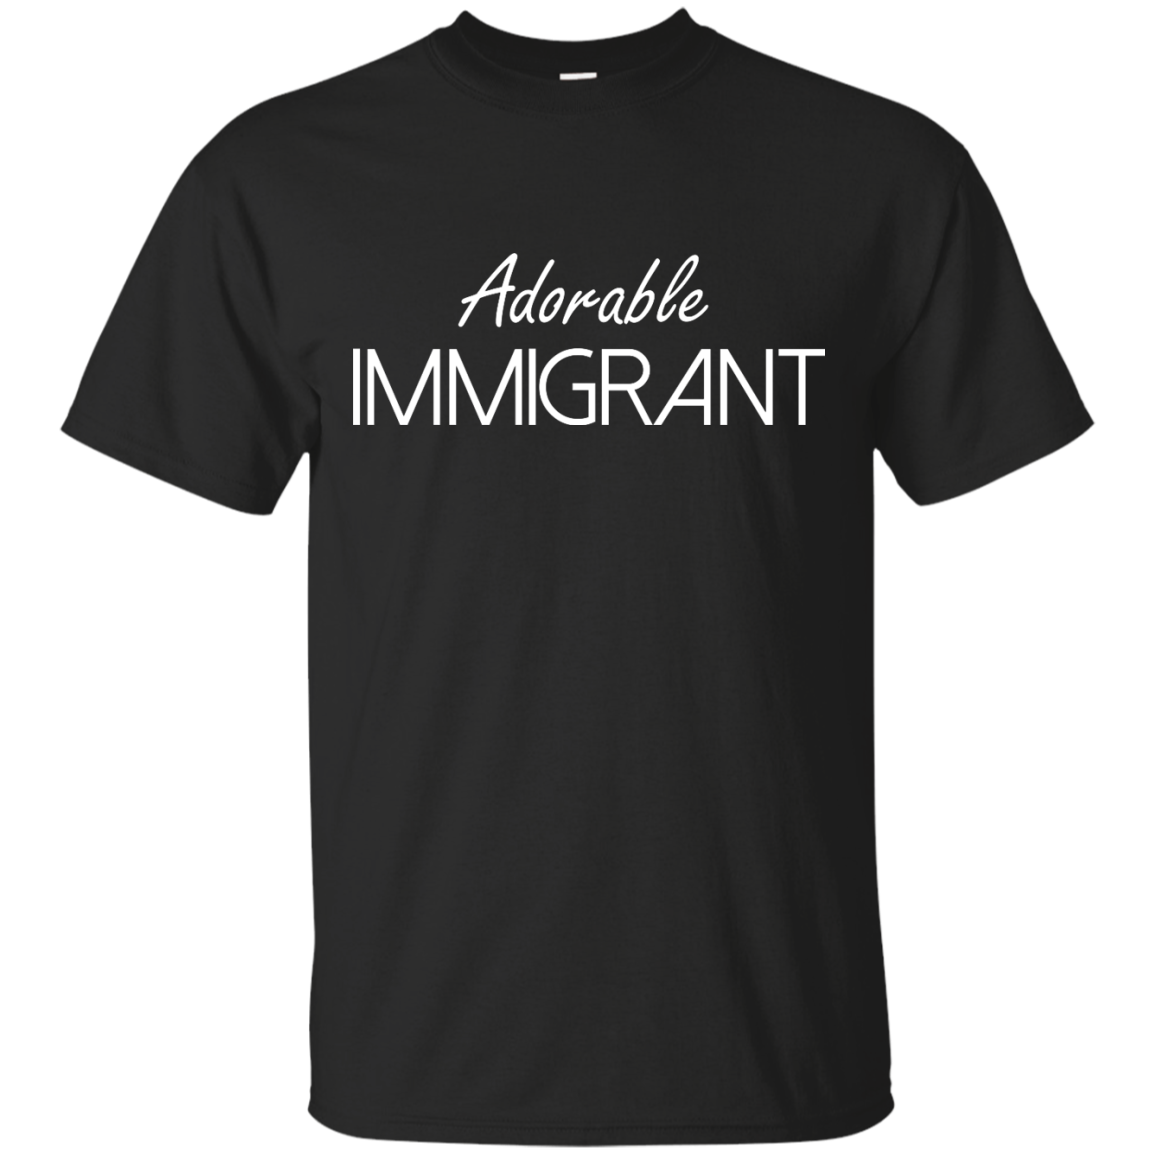 Adorable Immigrant shirt, sweatshirt, raceback